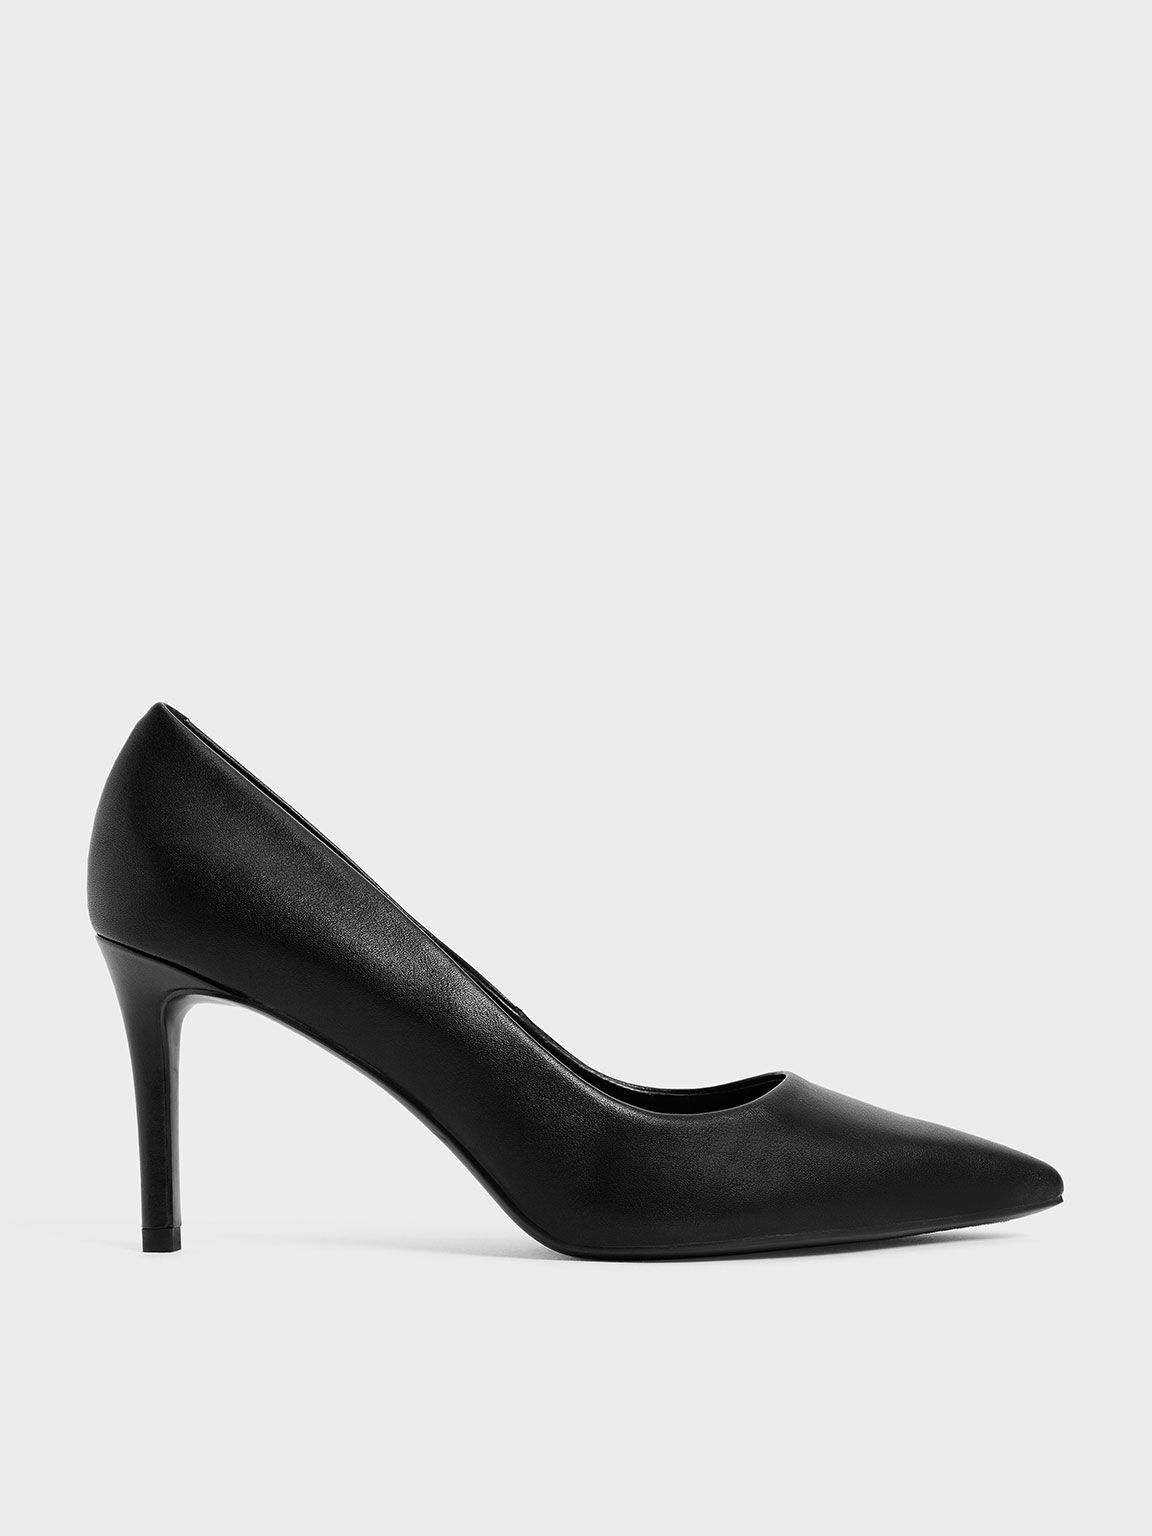 Office London Sequence Design Black high heels Platform Shoes UK Sizes 5  EUR 38 | eBay